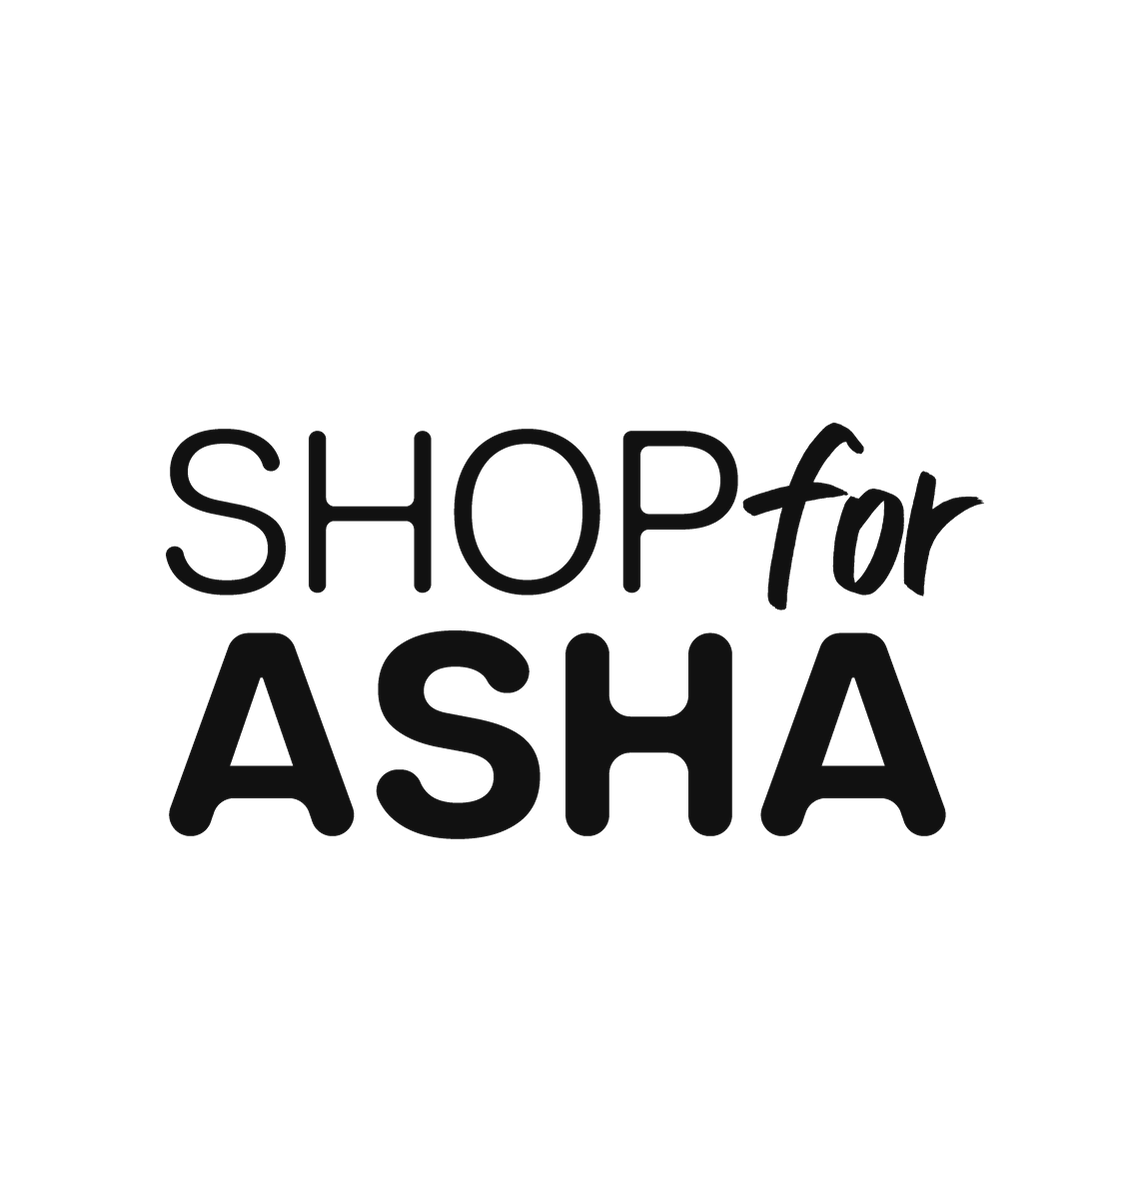 www.shopforasha.com